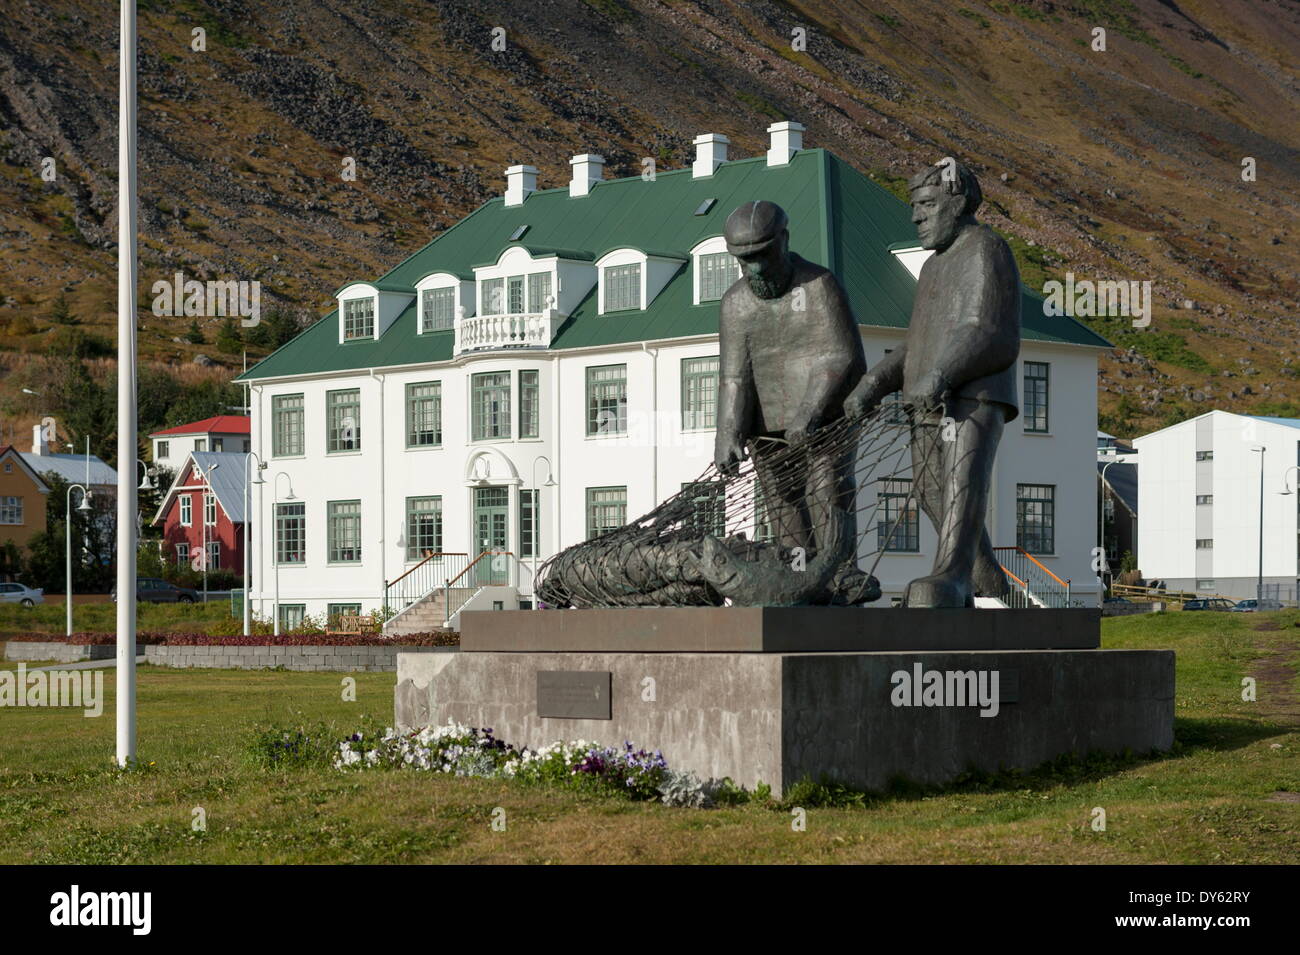 Isafjordur, Islande, Fjords de l'Ouest, régions polaires Banque D'Images